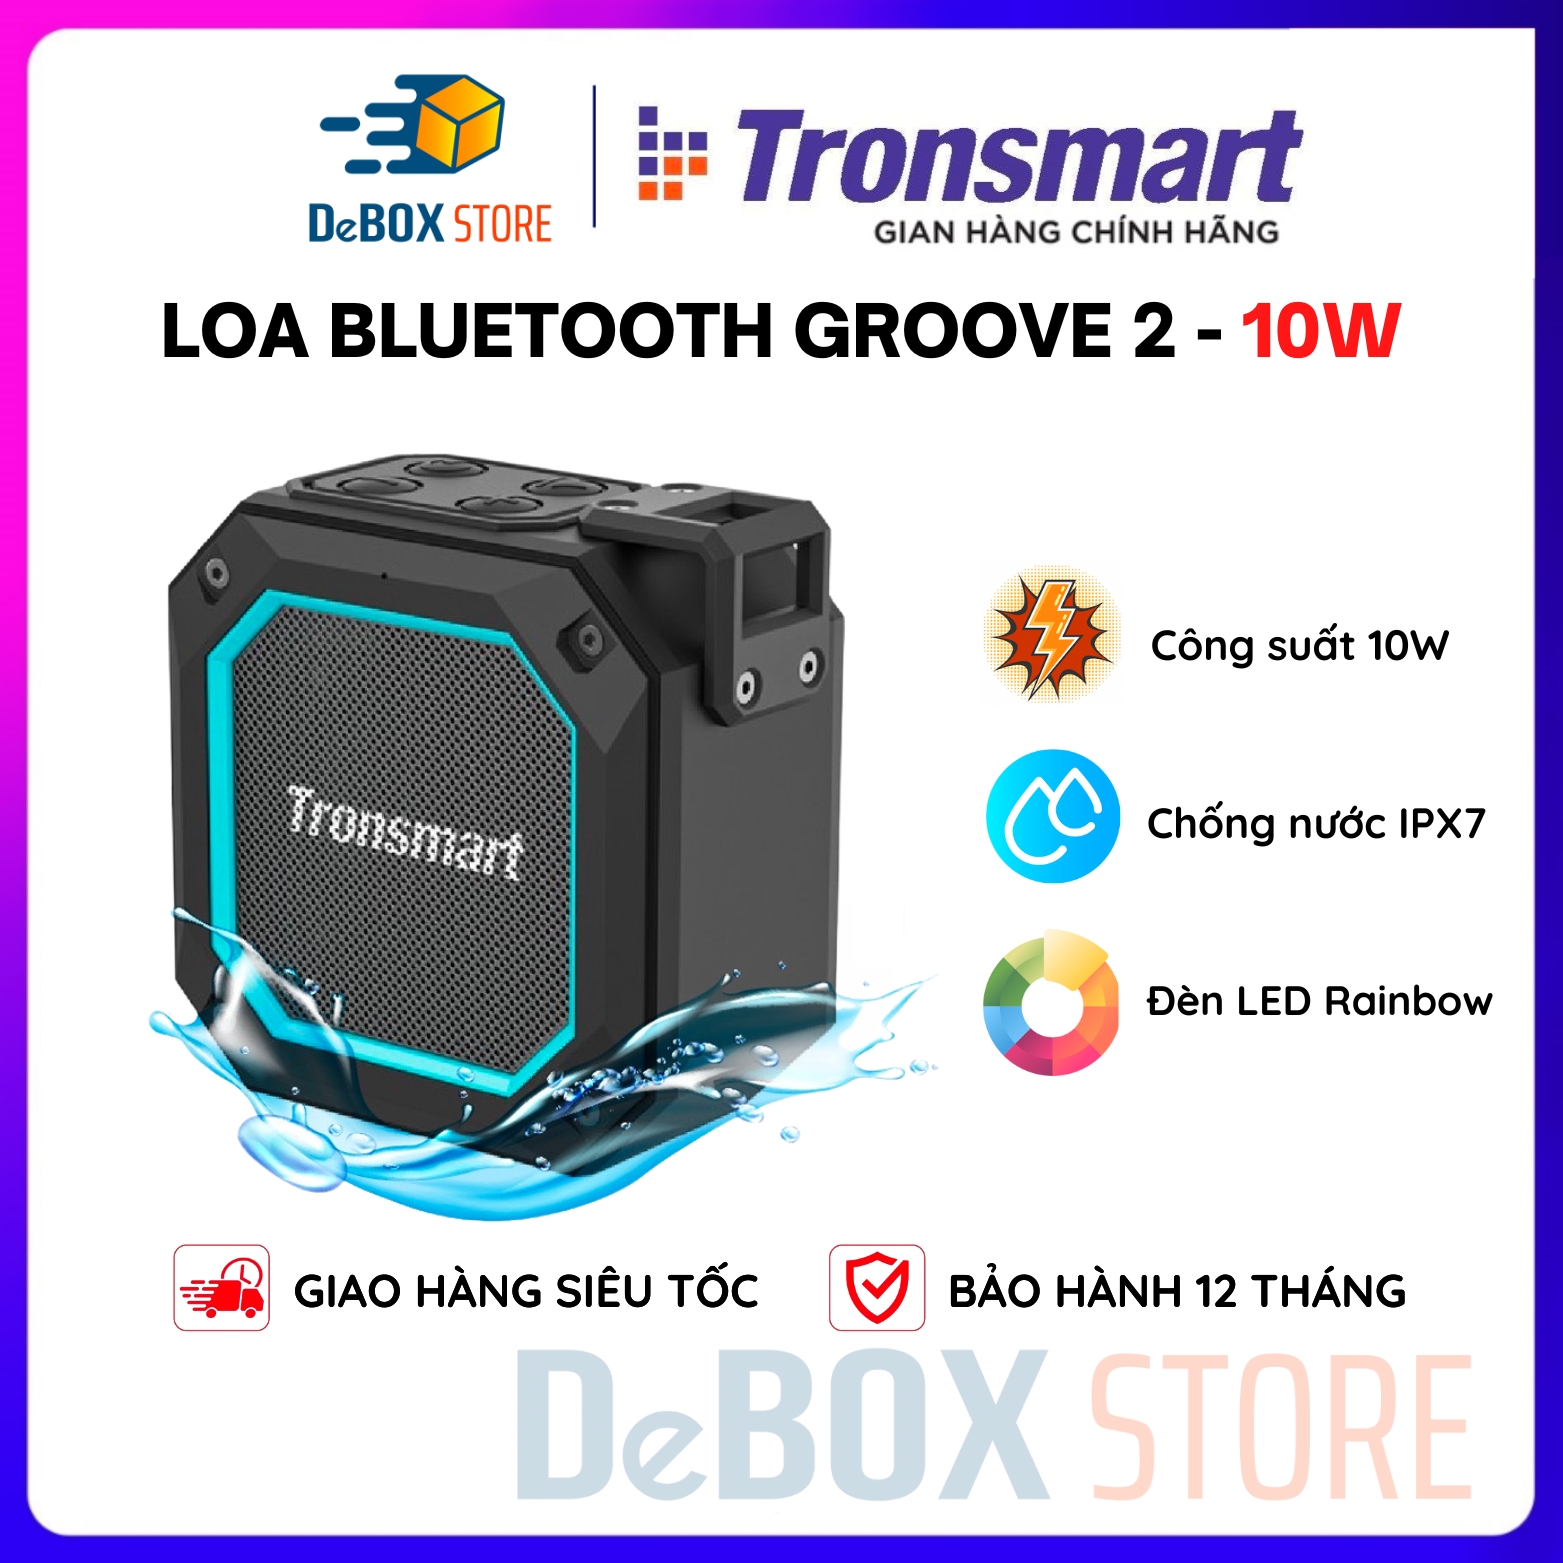 Loa Bluetooth Tronsmart Groove 2 Speaker Chống nước IPX7, Chế độ EQ Kép, LED Rainbow - Hàng chính hãng